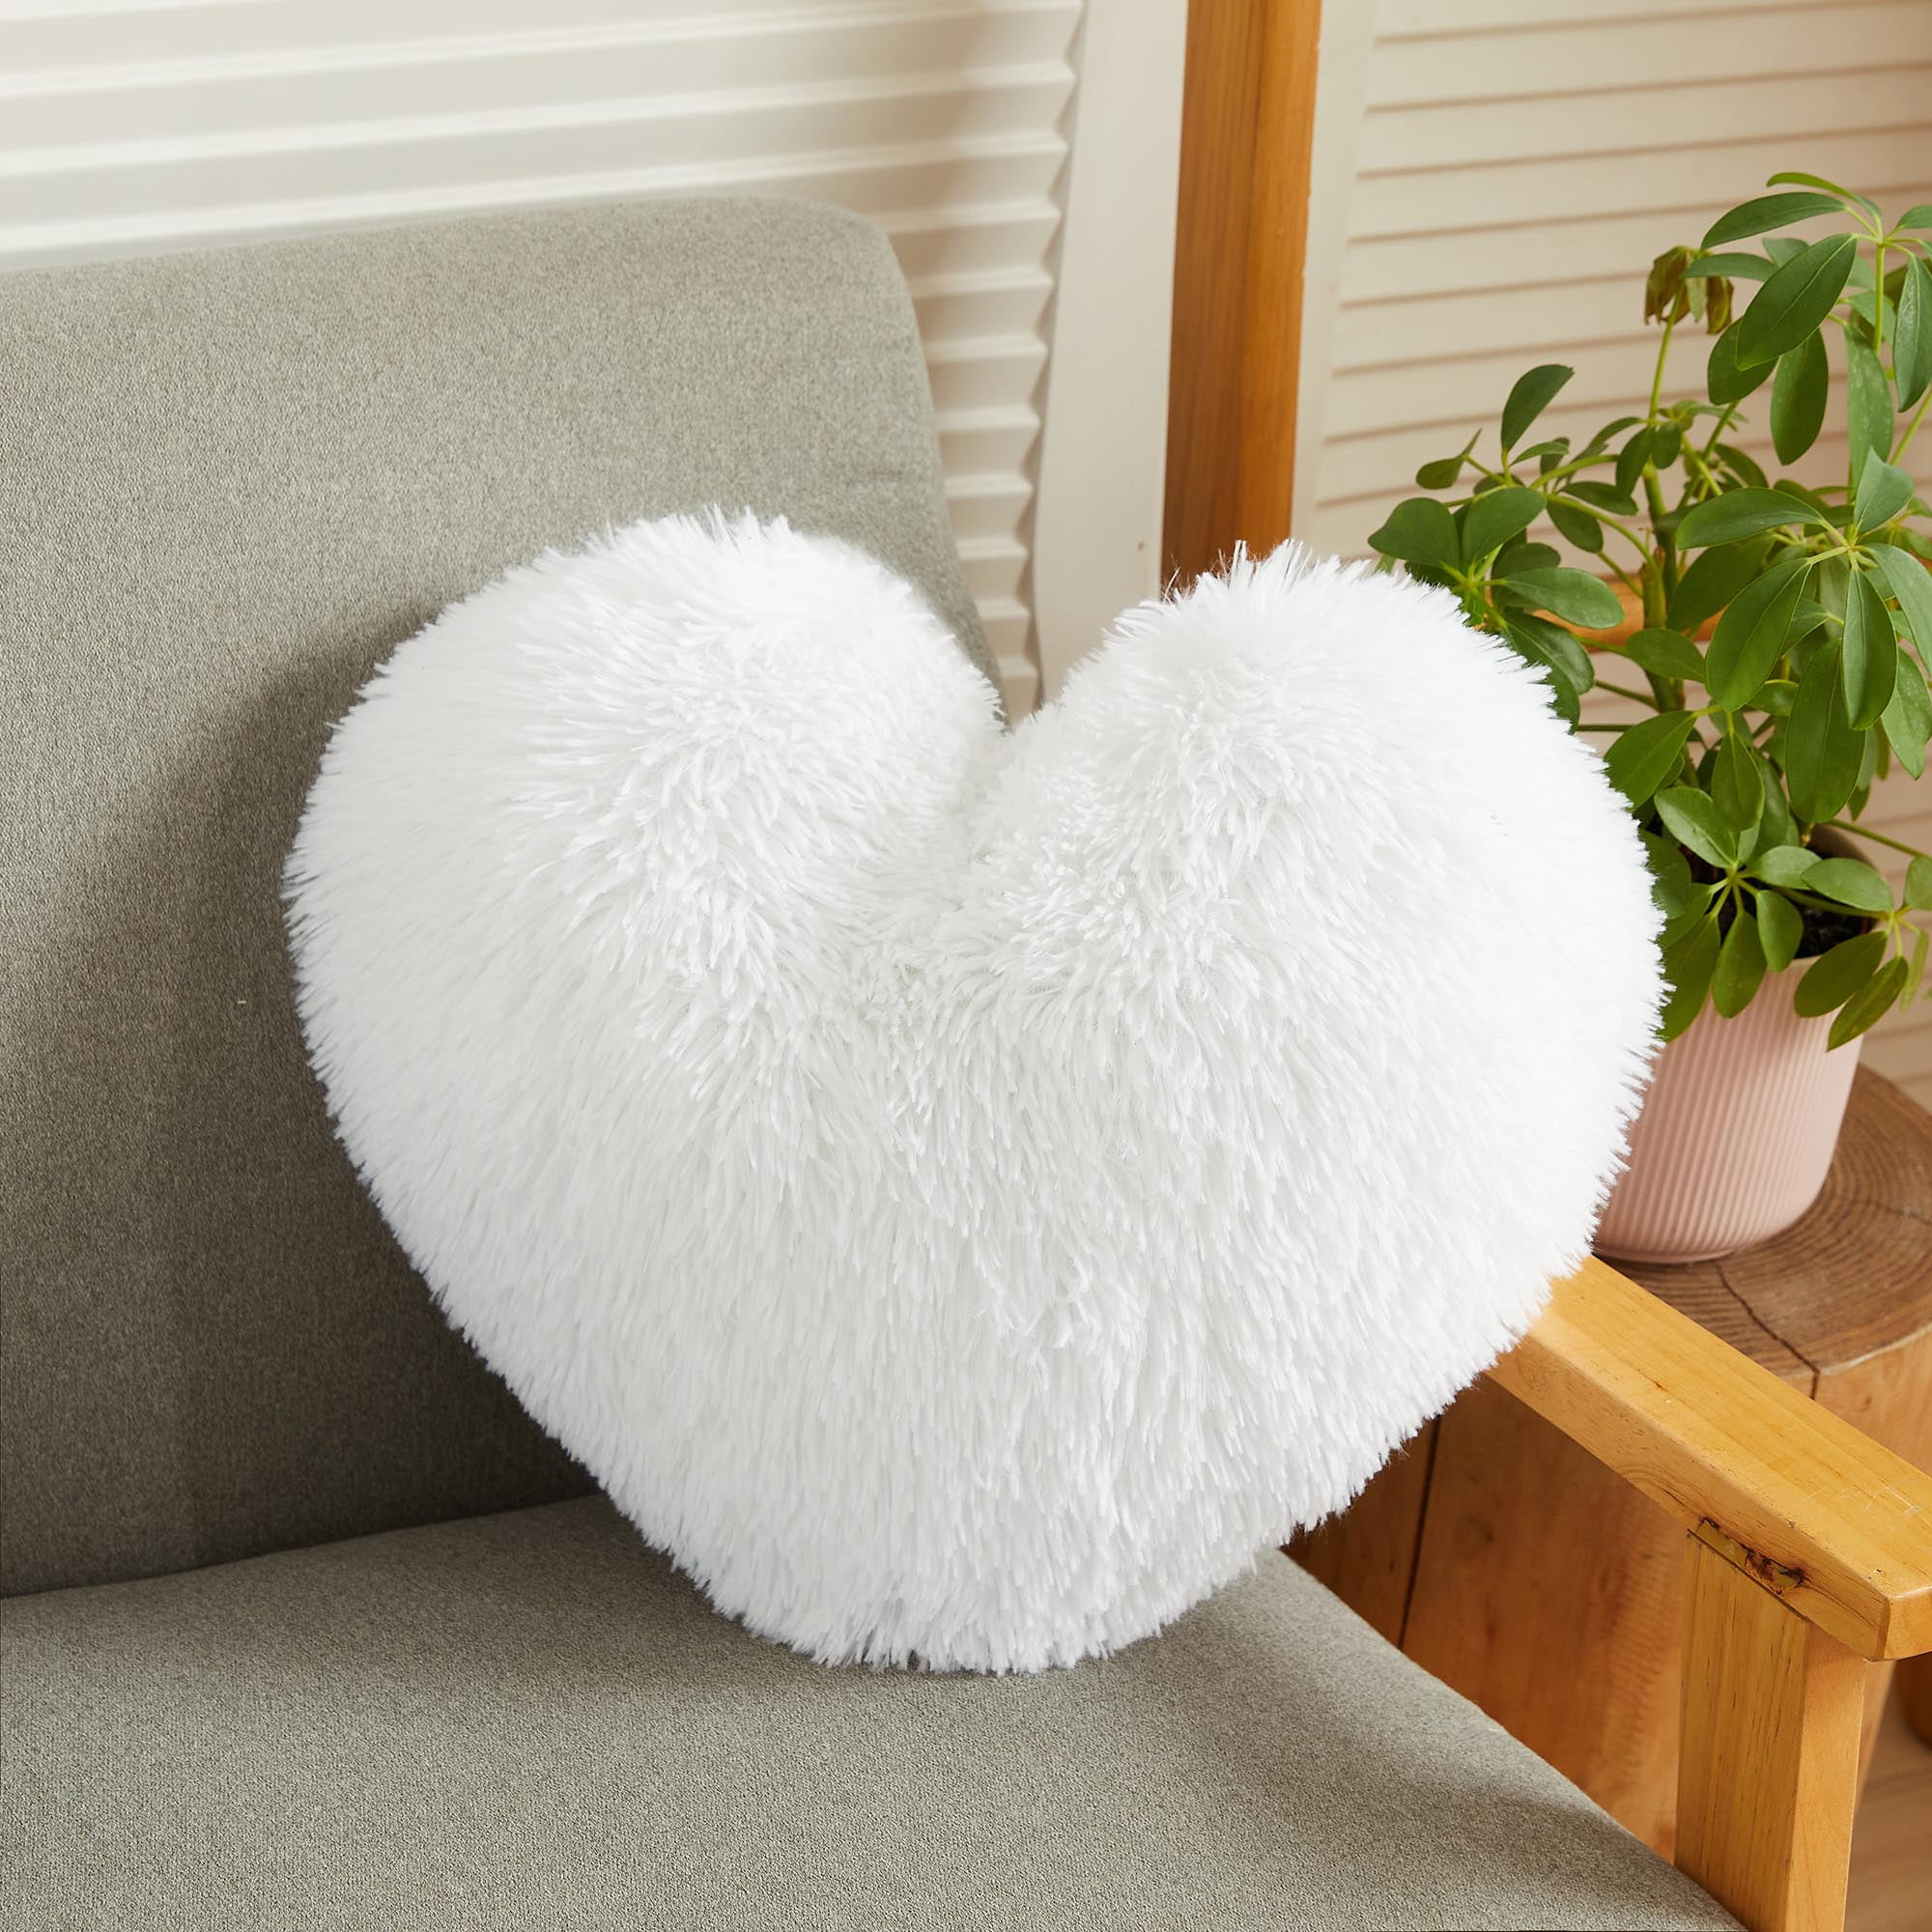 Heart Decor Peach Pillow Insert Inserts Shaped Cushion Filler Throw Case  Stuffer Outdoor - AliExpress